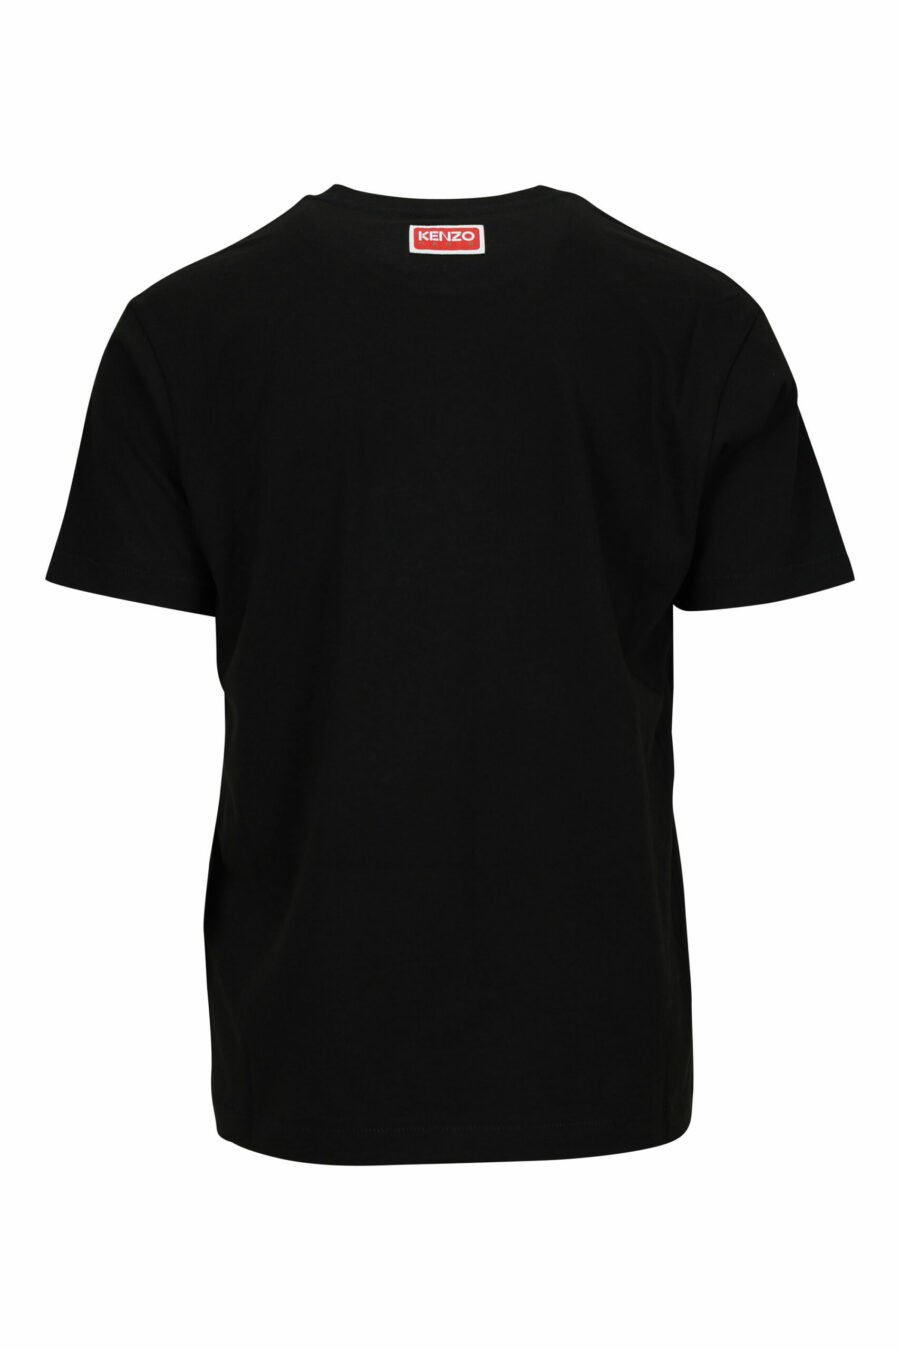 T-shirt noir surdimensionné avec grand logo tigré en relief - 3612230568068 1 scaled